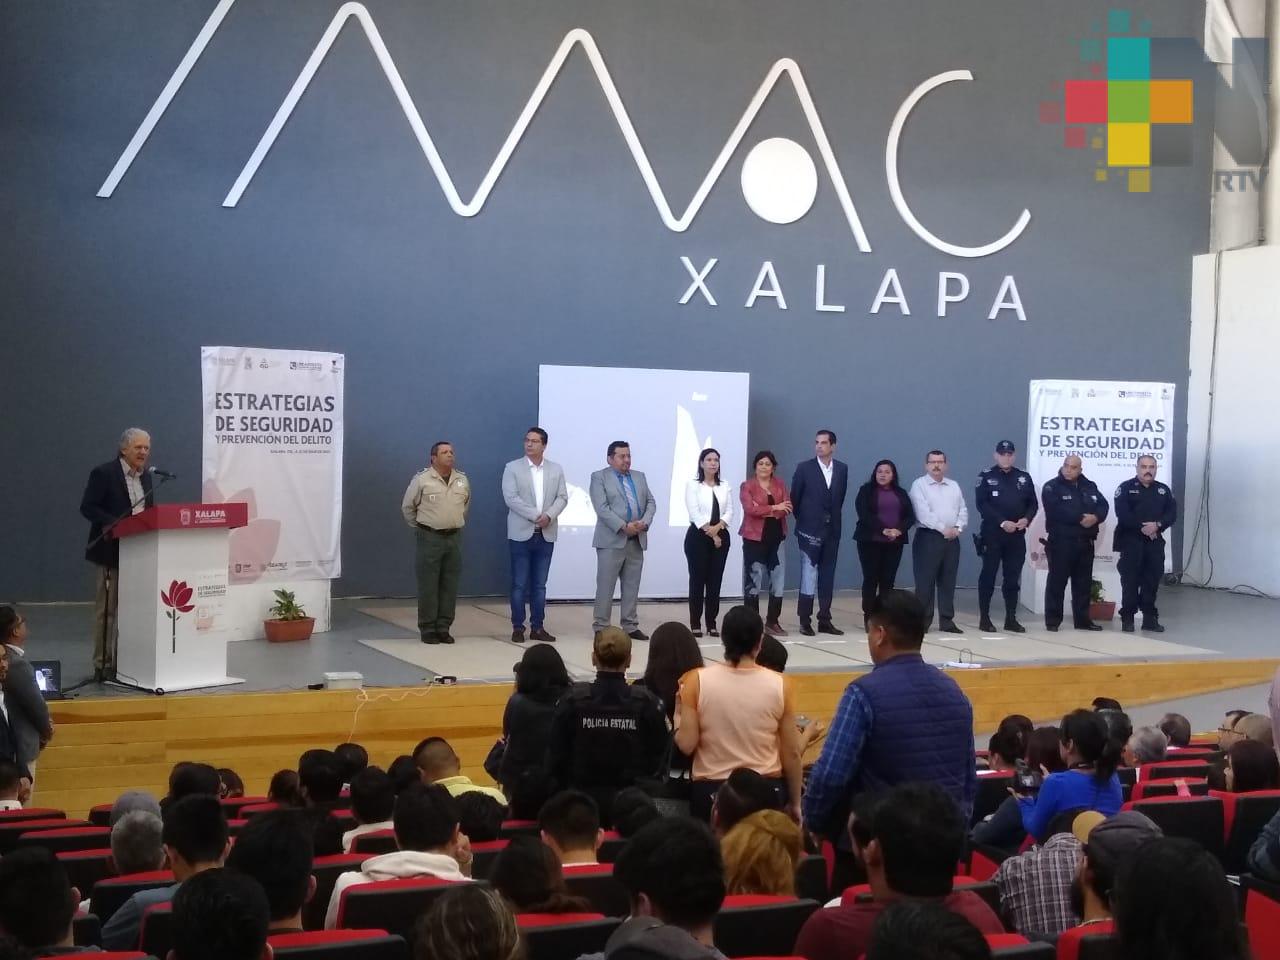 Ayuntamiento de Xalapa realizó el foro Estrategias de Seguridad y Prevención del Delito